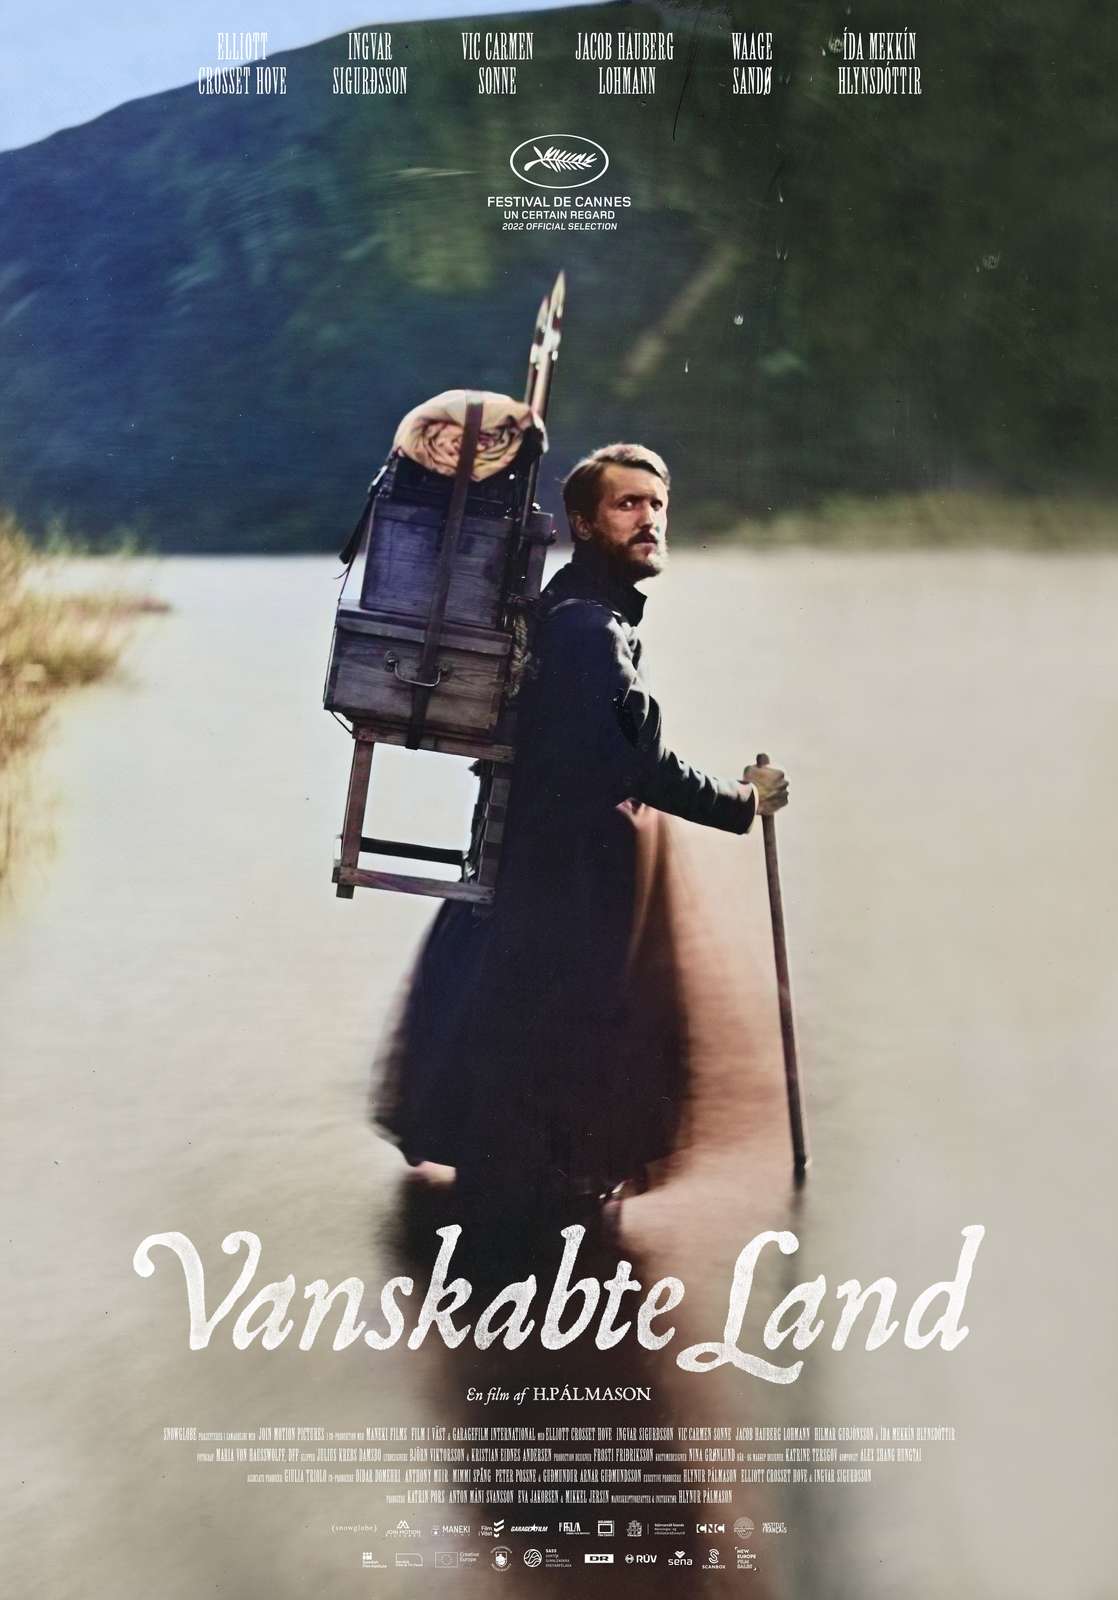 Poster from Vanskabte Land - Denmark